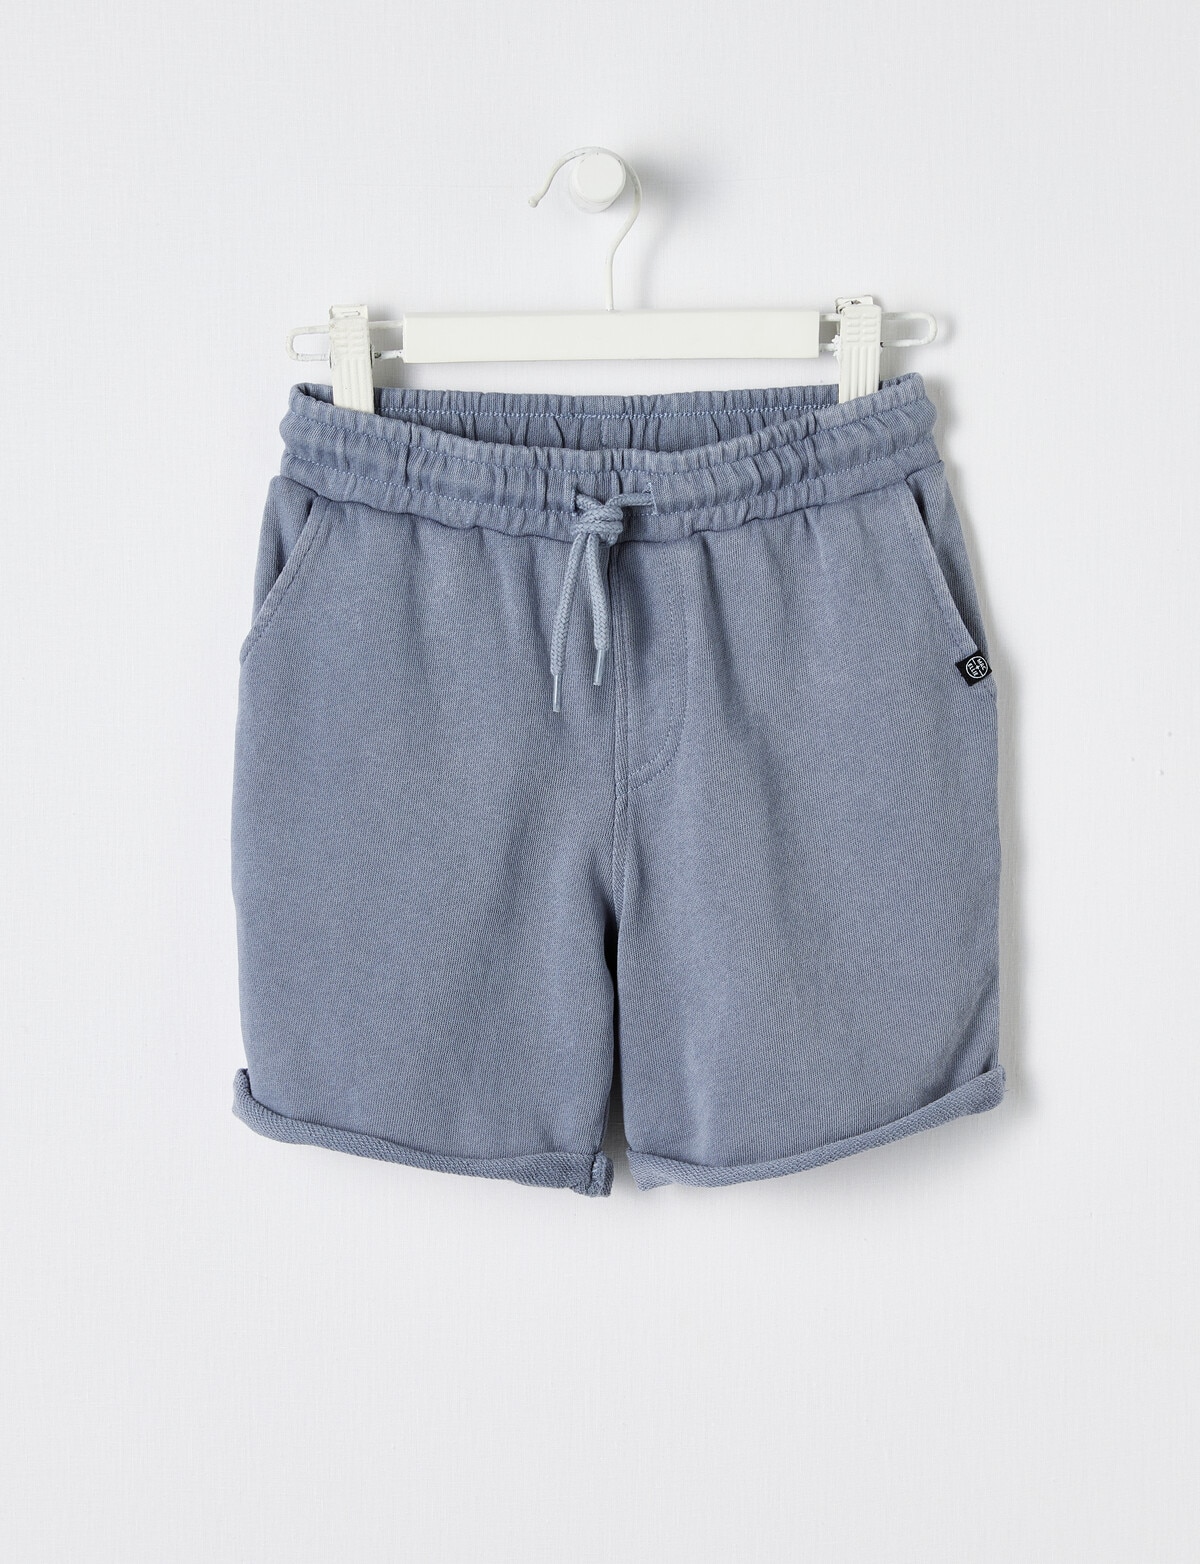 Mac & Ellie Garment Dye Knit Short, Smoke - Shorts